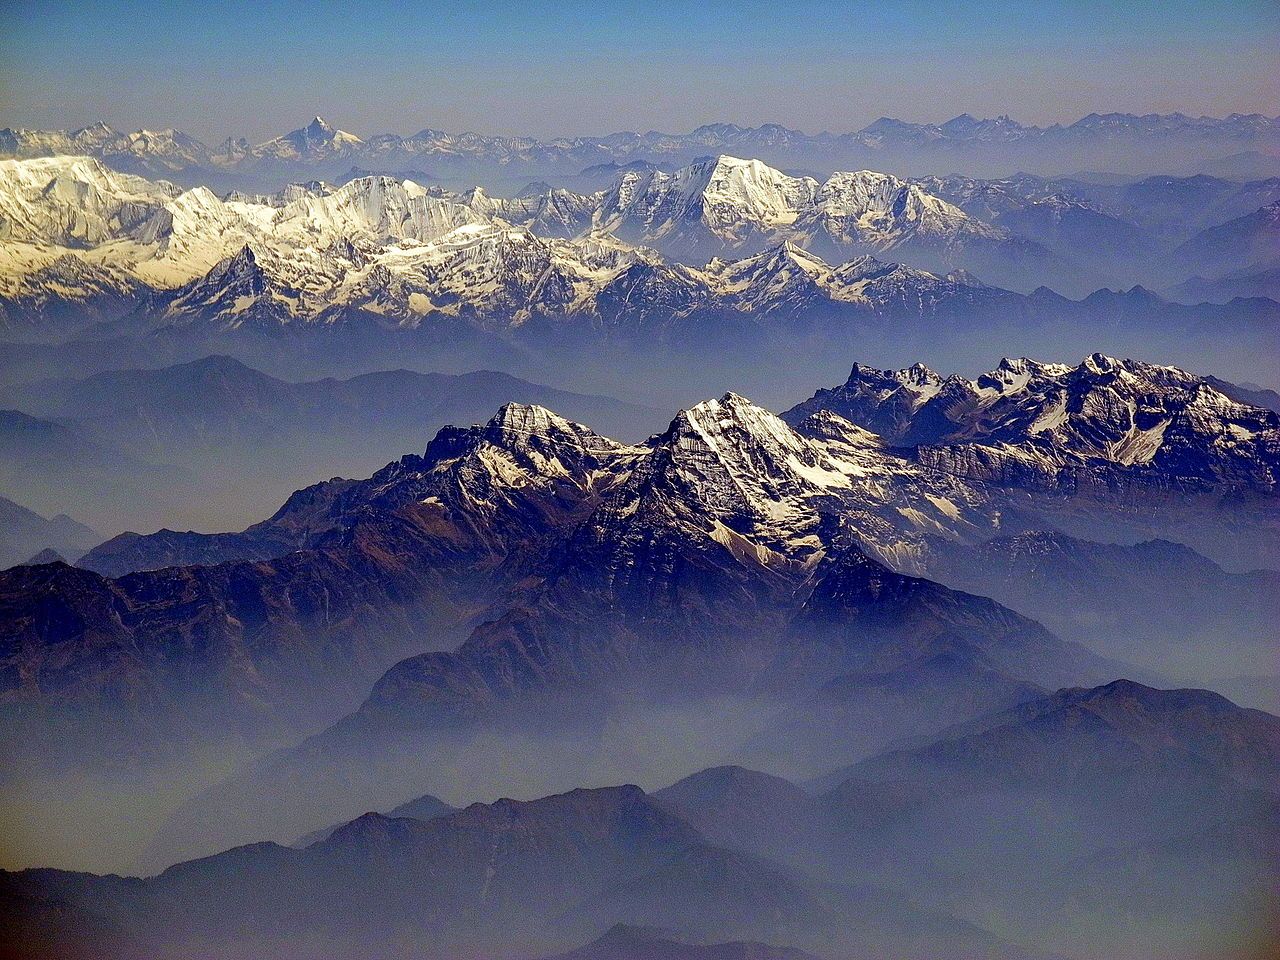 Pegunungan himalaya merupakan salah satu pegunungan di asia bentang alam tersebut terbentuk oleh proses